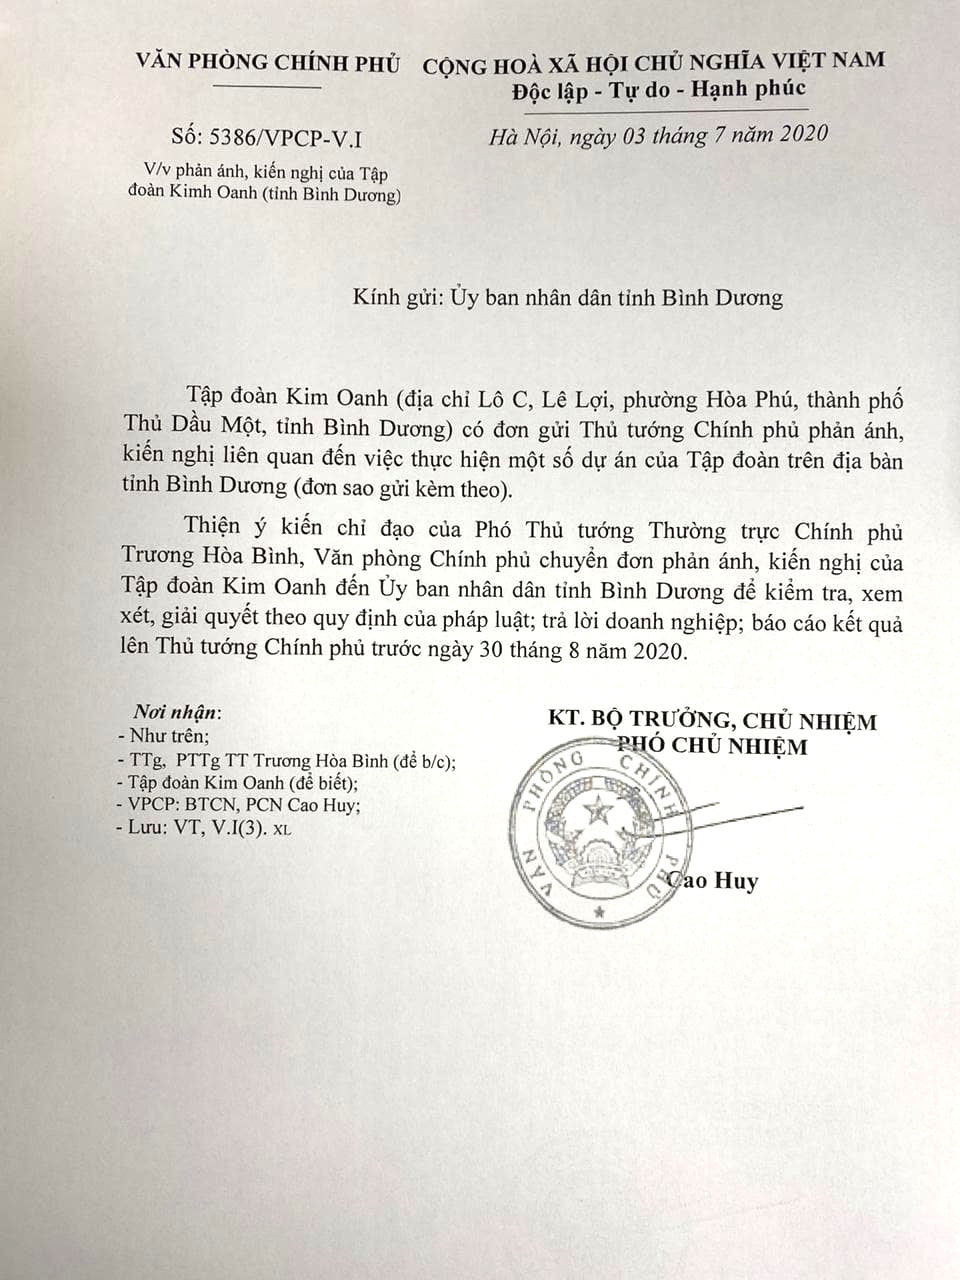 Văn bản số 5386 truyền đạt ý kiến của Phó Thủ tướng Thường trực Trương Hòa Bình liên quan đến việc thực hiện một số dự án của Công ty Kim Oanh tại Bình Dương